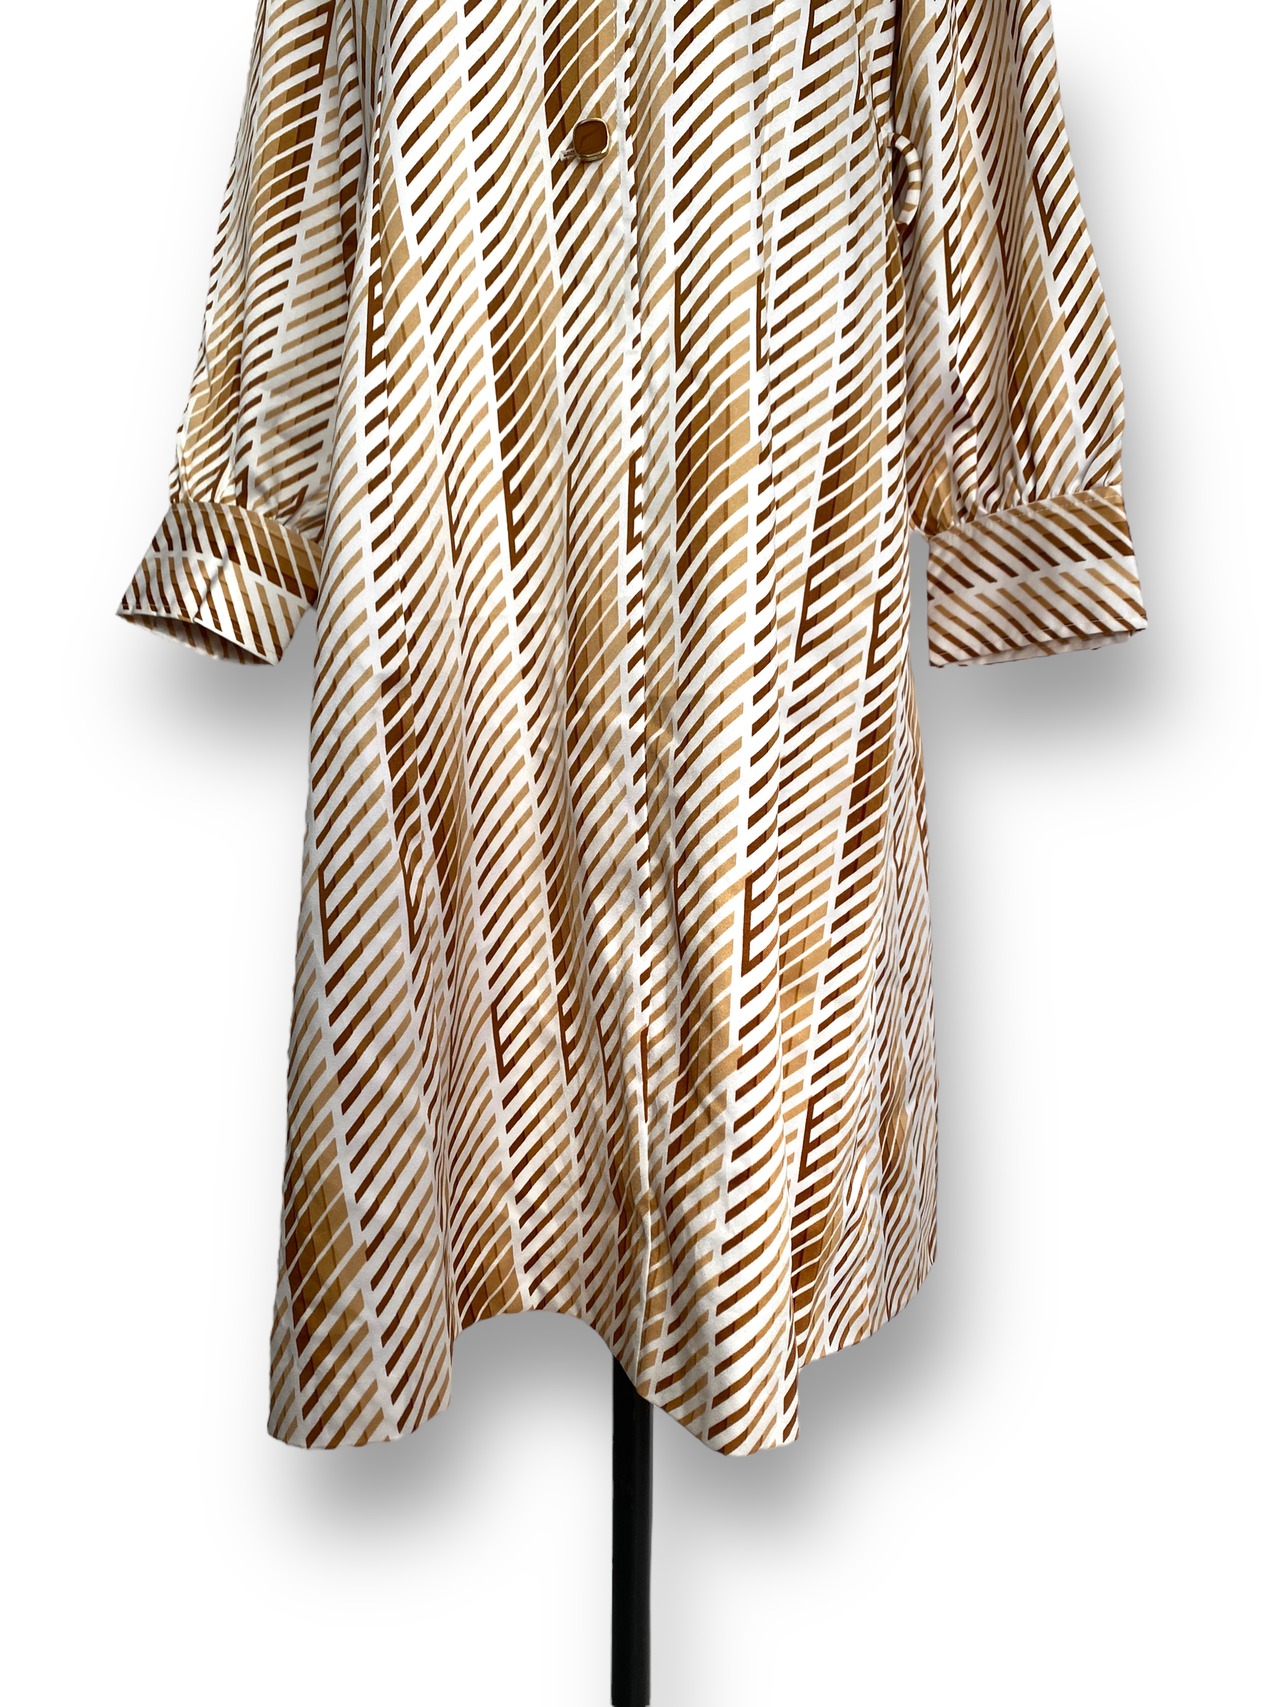 70’s Stripe pattern dress